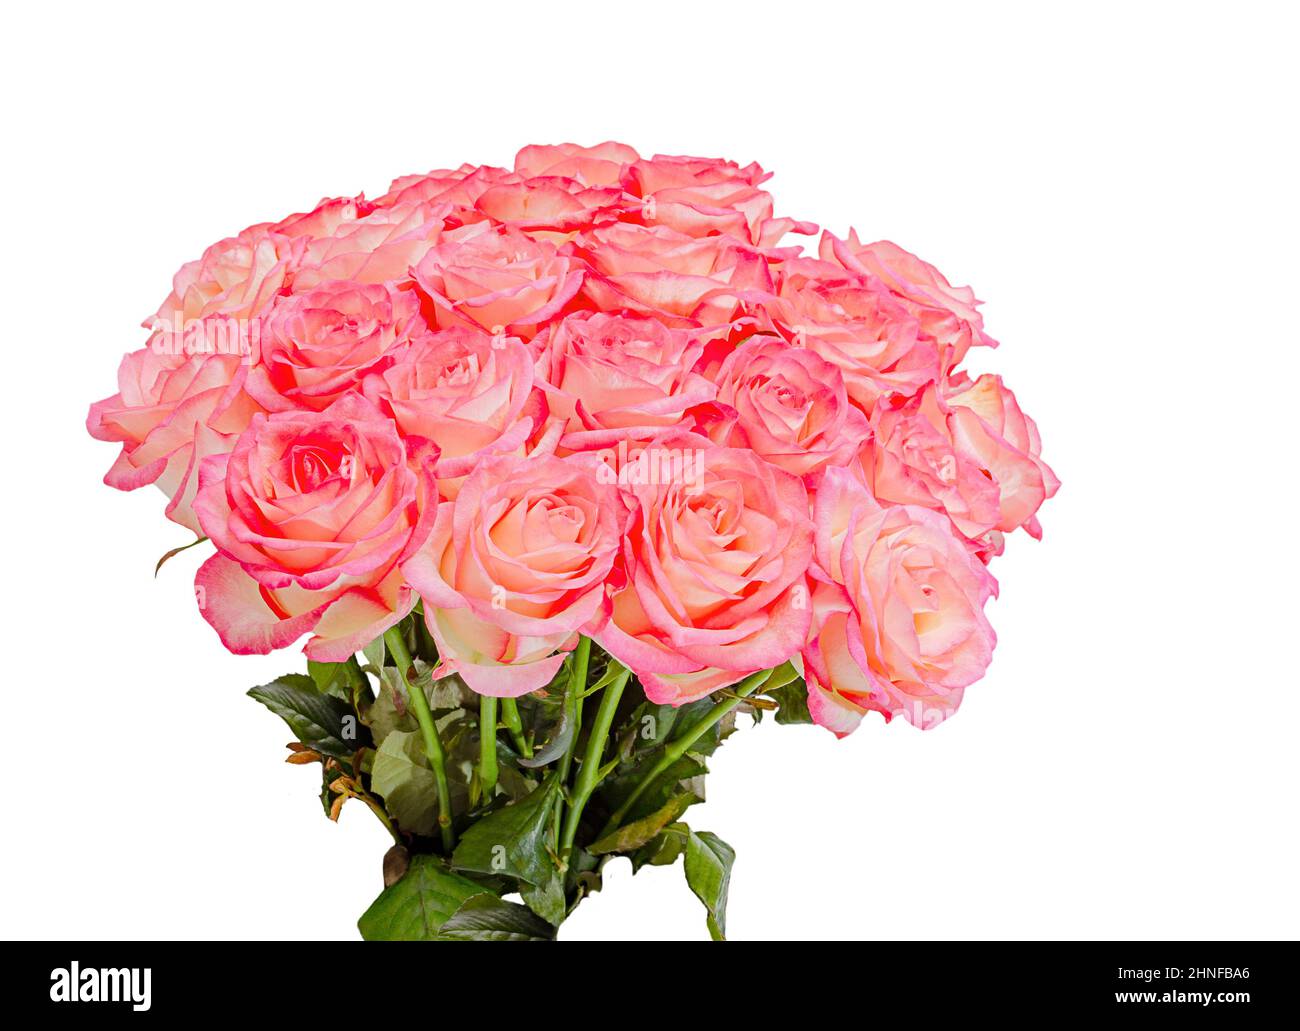 fleurs roses naturelles en bouquet isolé sur fond blanc Banque D'Images